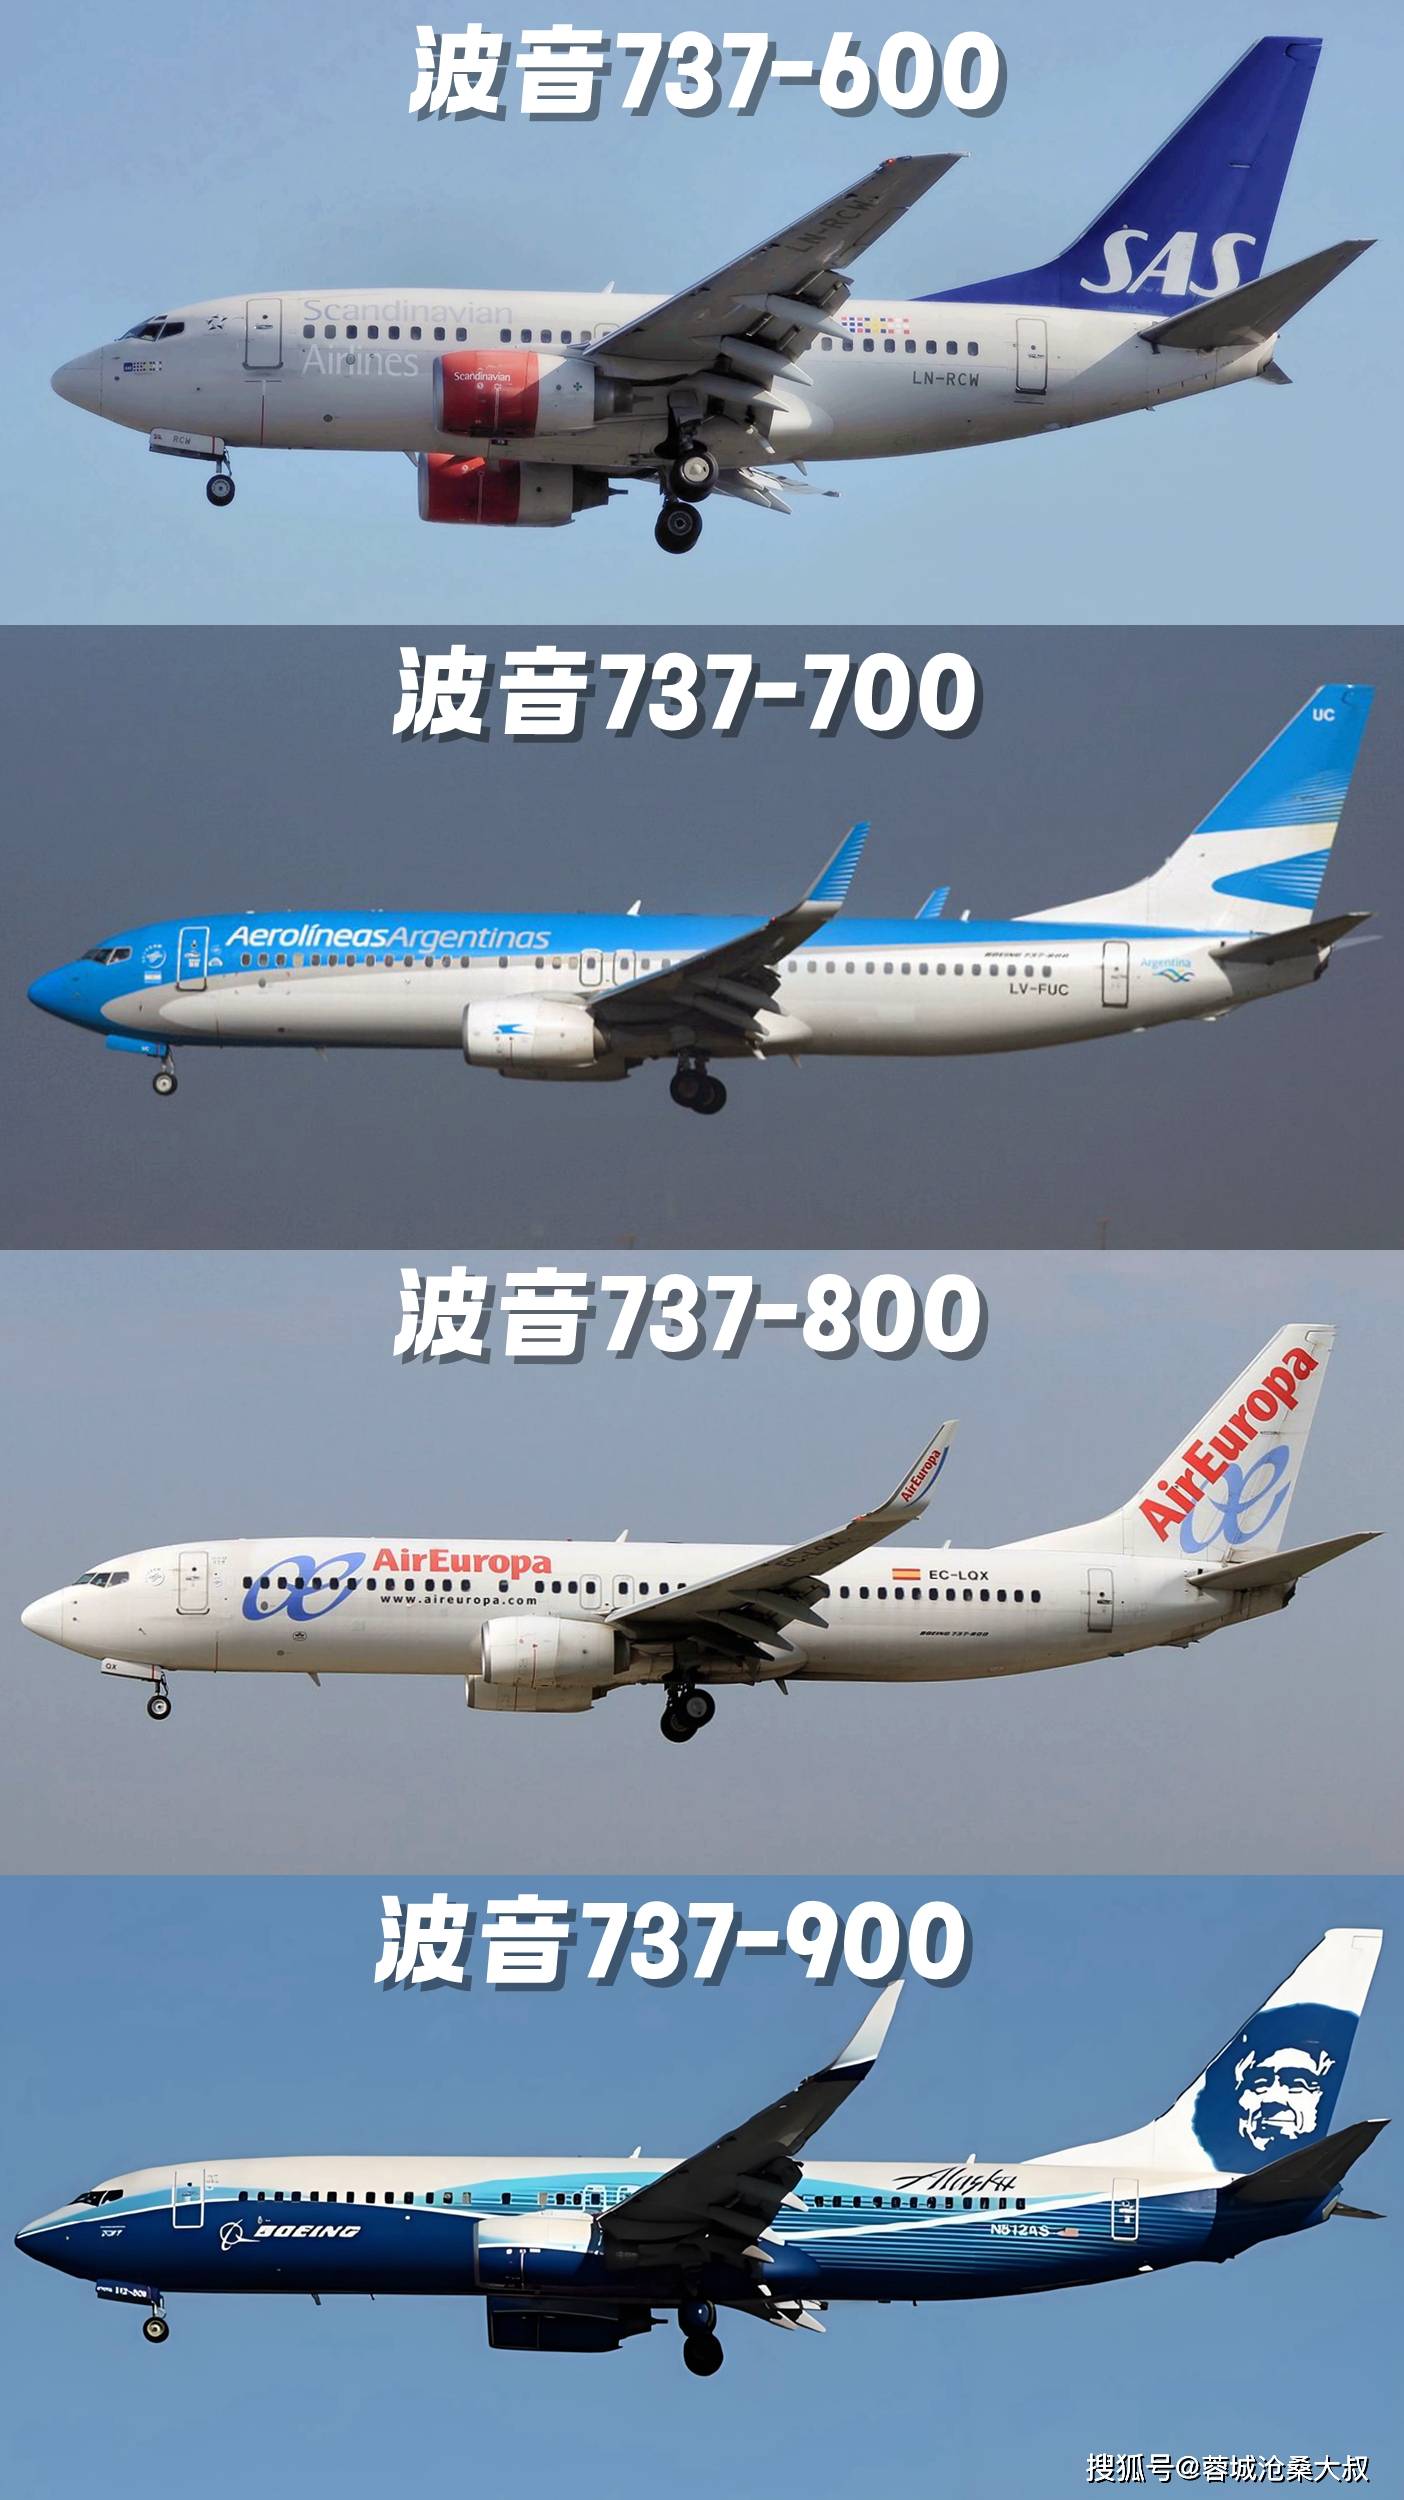 波音737家族全解析:四代机型11526架飞机!中国有多少架max?